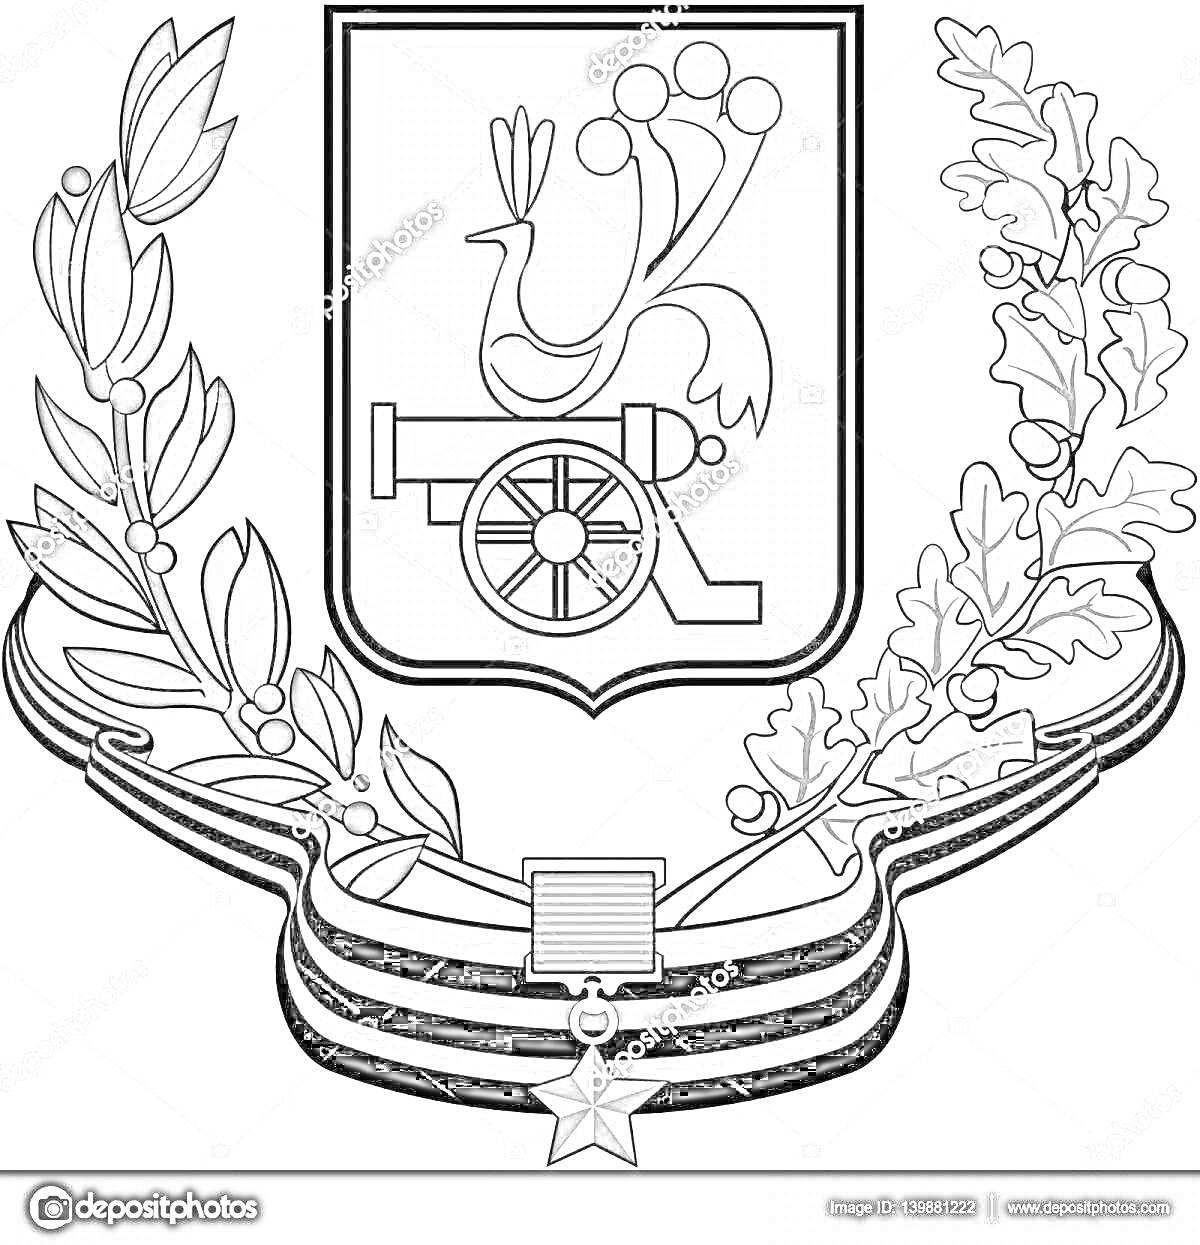 Герб Смоленска с геральдическим щитом, пушкой, птицей, дубовыми и лавровыми ветвями, орденом